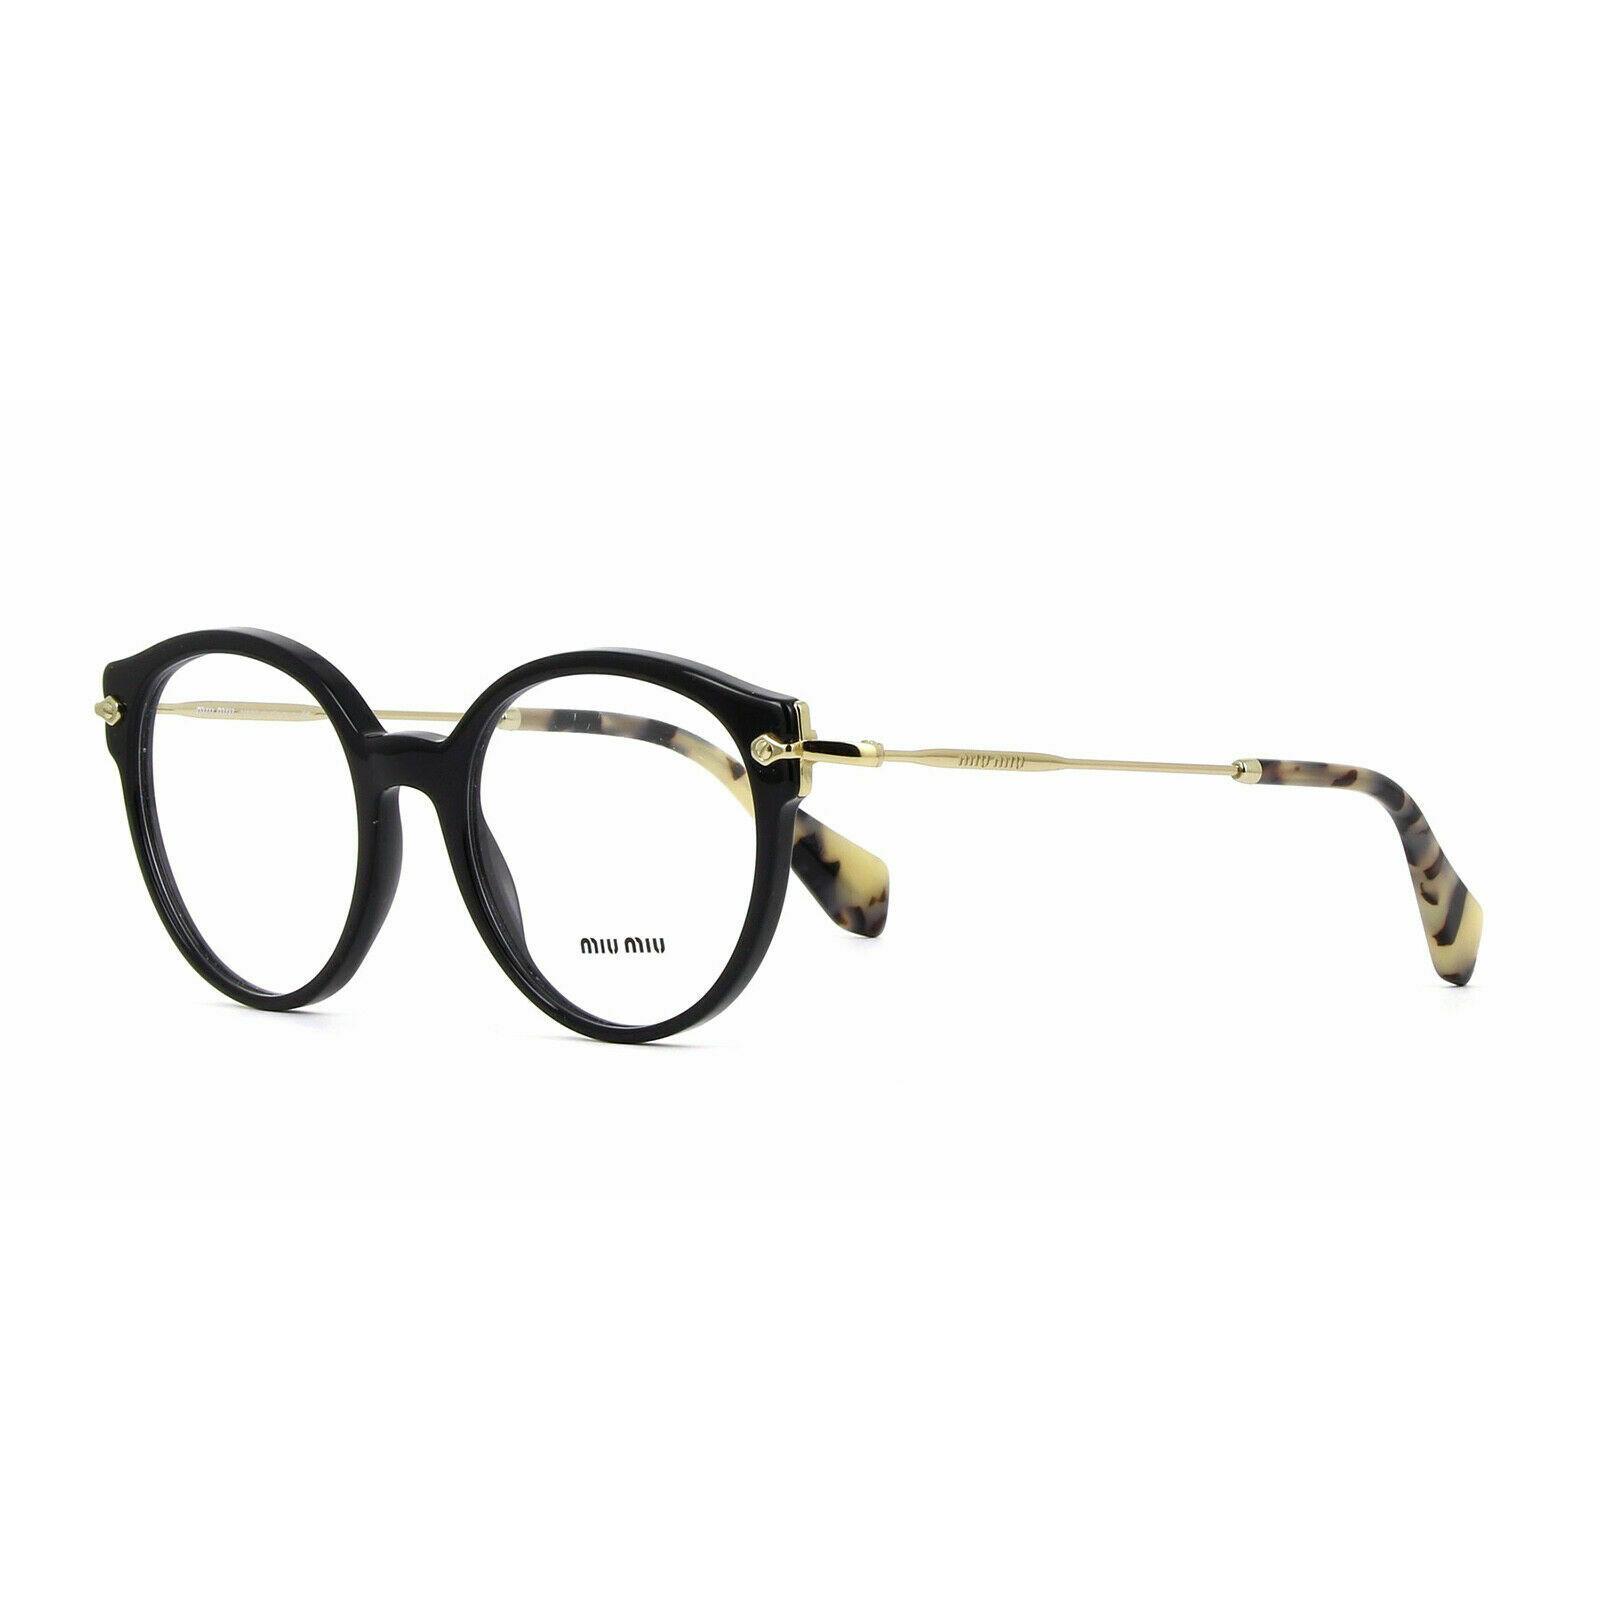 Miu Miu Eyeglasses MU04PV 1AB-101 Black / Gold 52-19-140 16